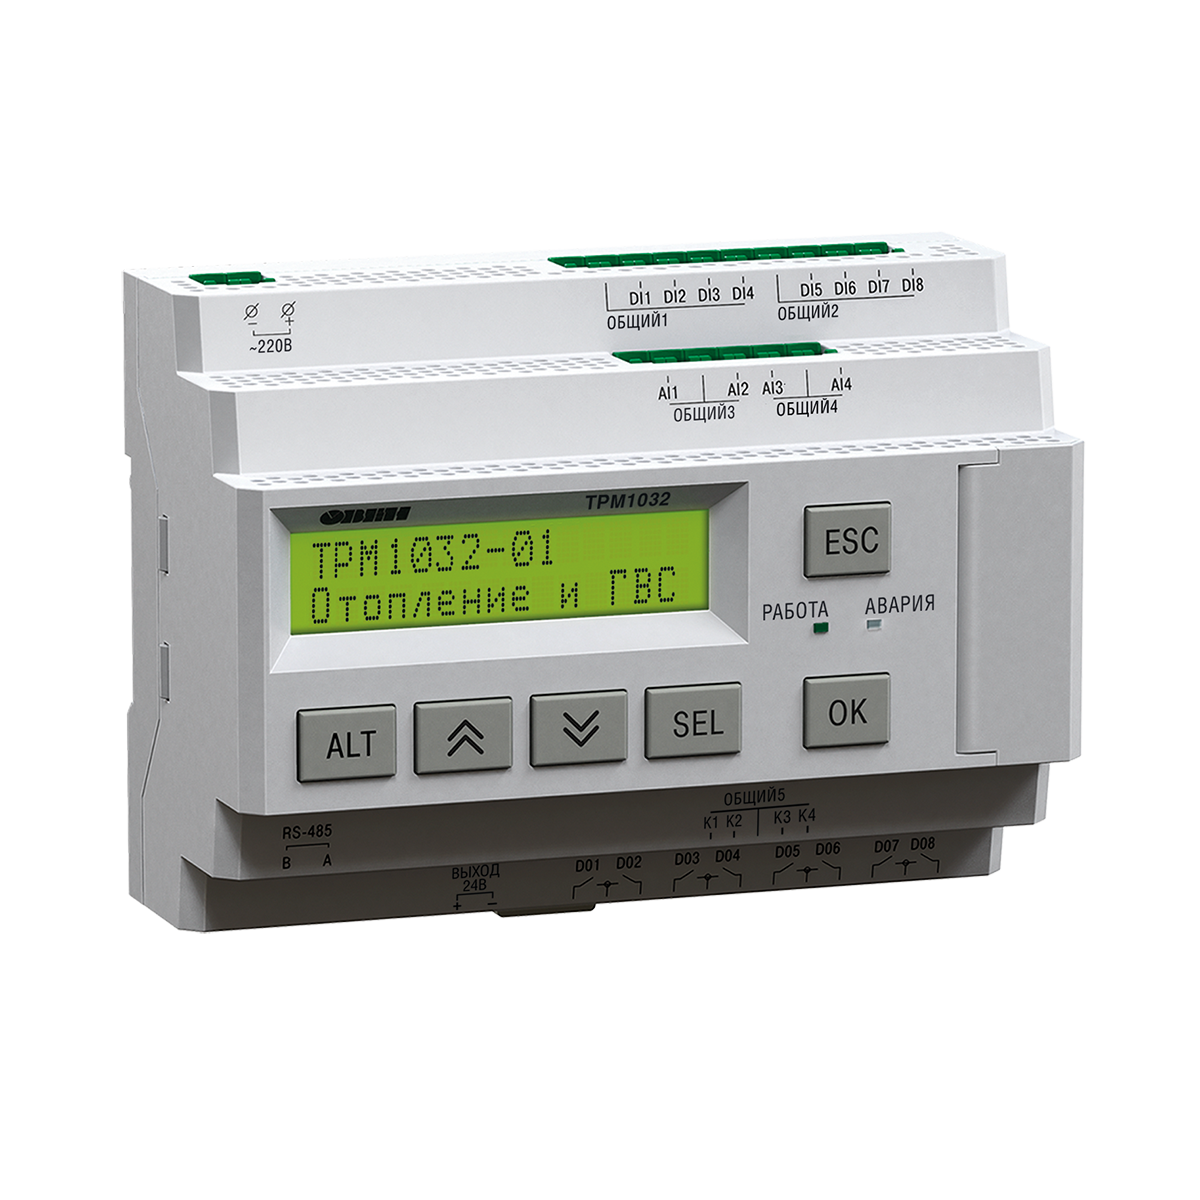 ТРМ1032М-12.00.У – устройство с готовой логикой для автоматизации контуров отопления и ГВС в ИТП/ЦТП.